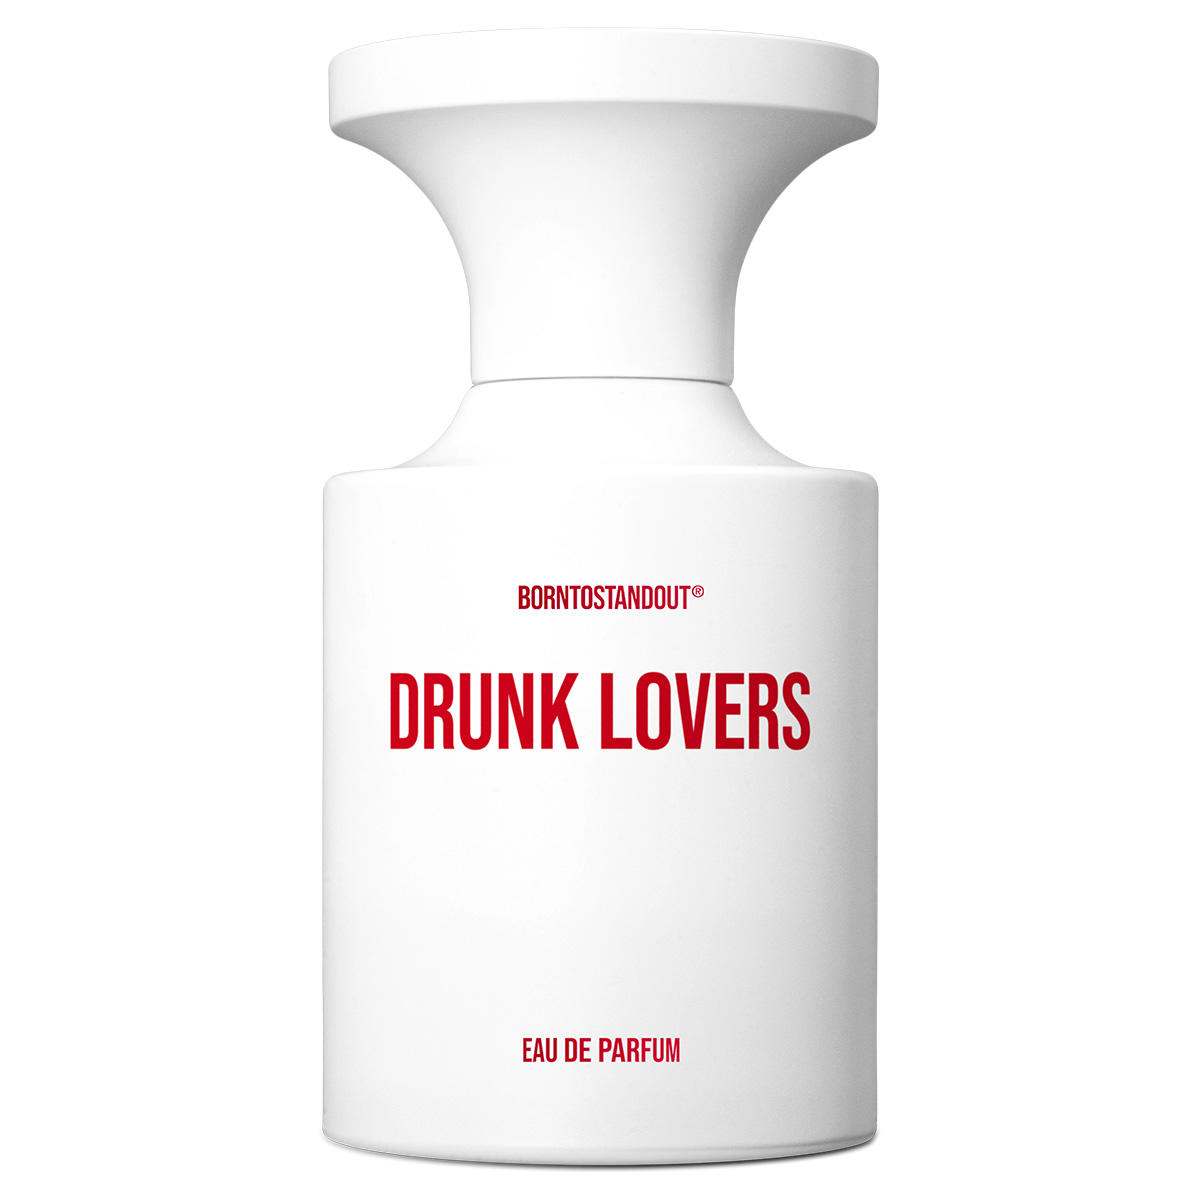 BORNTOSTANDOUT Drunk Lovers Eau de Parfum 50 ml - 1